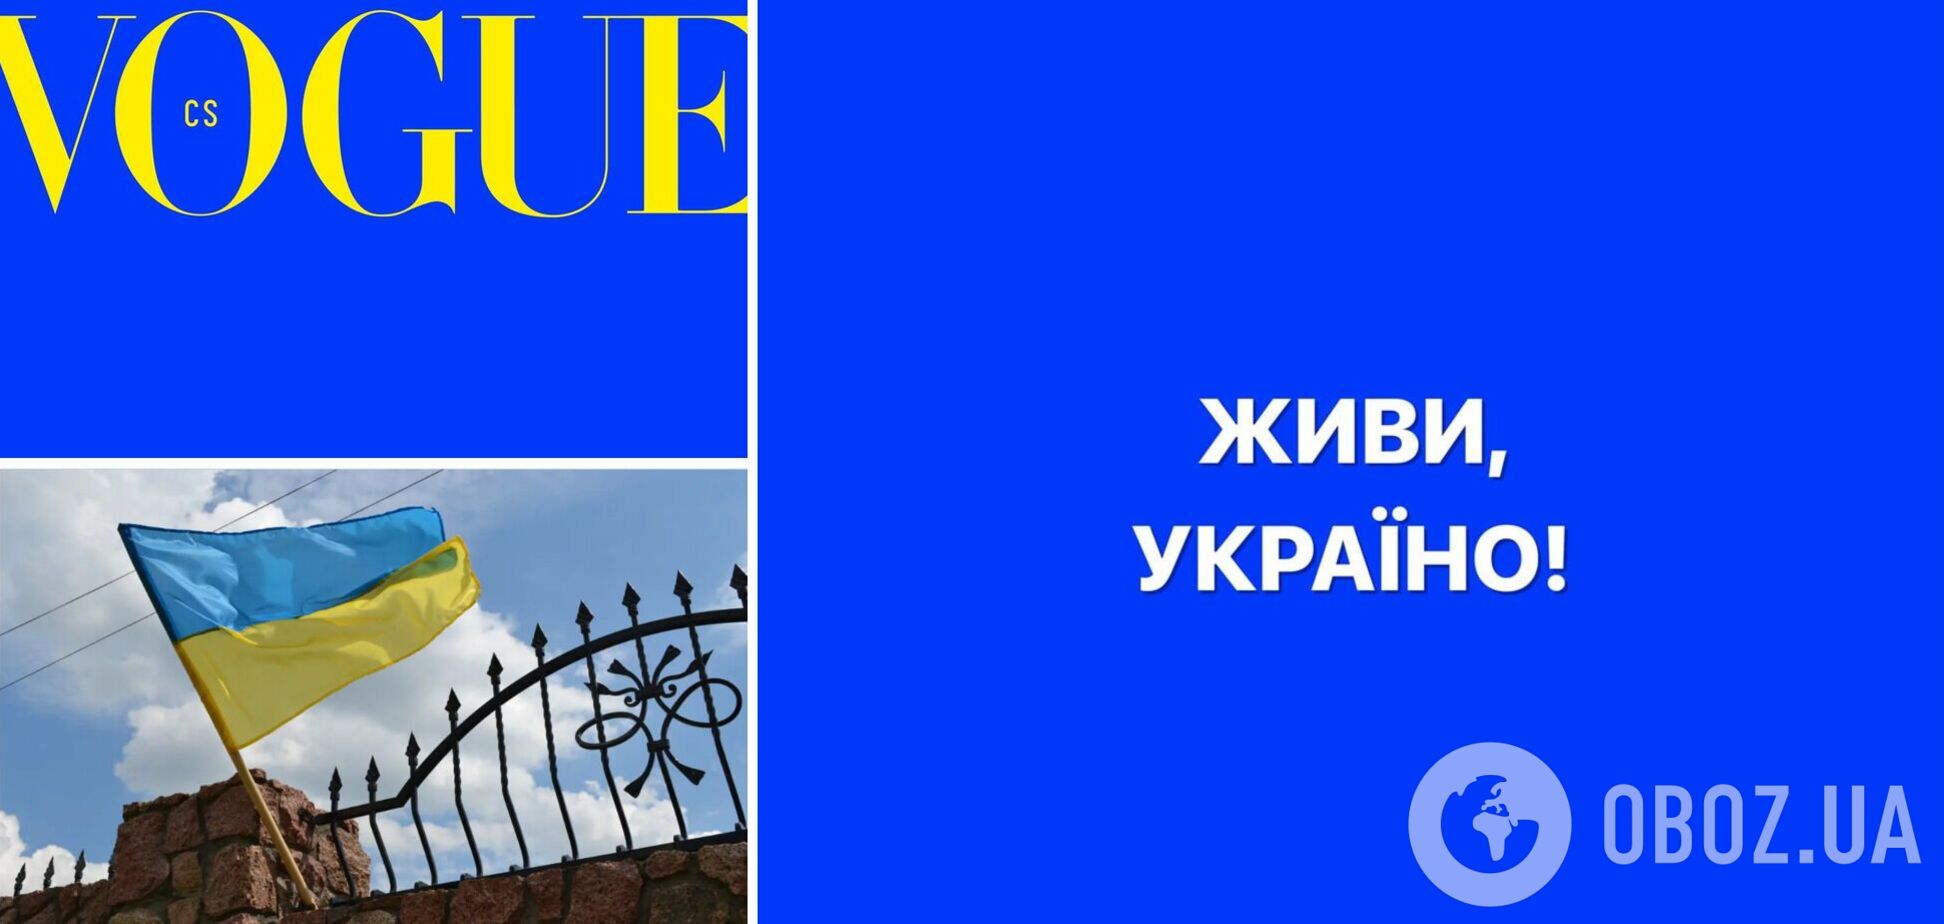 Vogue Czechoslovakia вперше в історії випустив номер без фото на обкладинці в знак солідарності з Україною